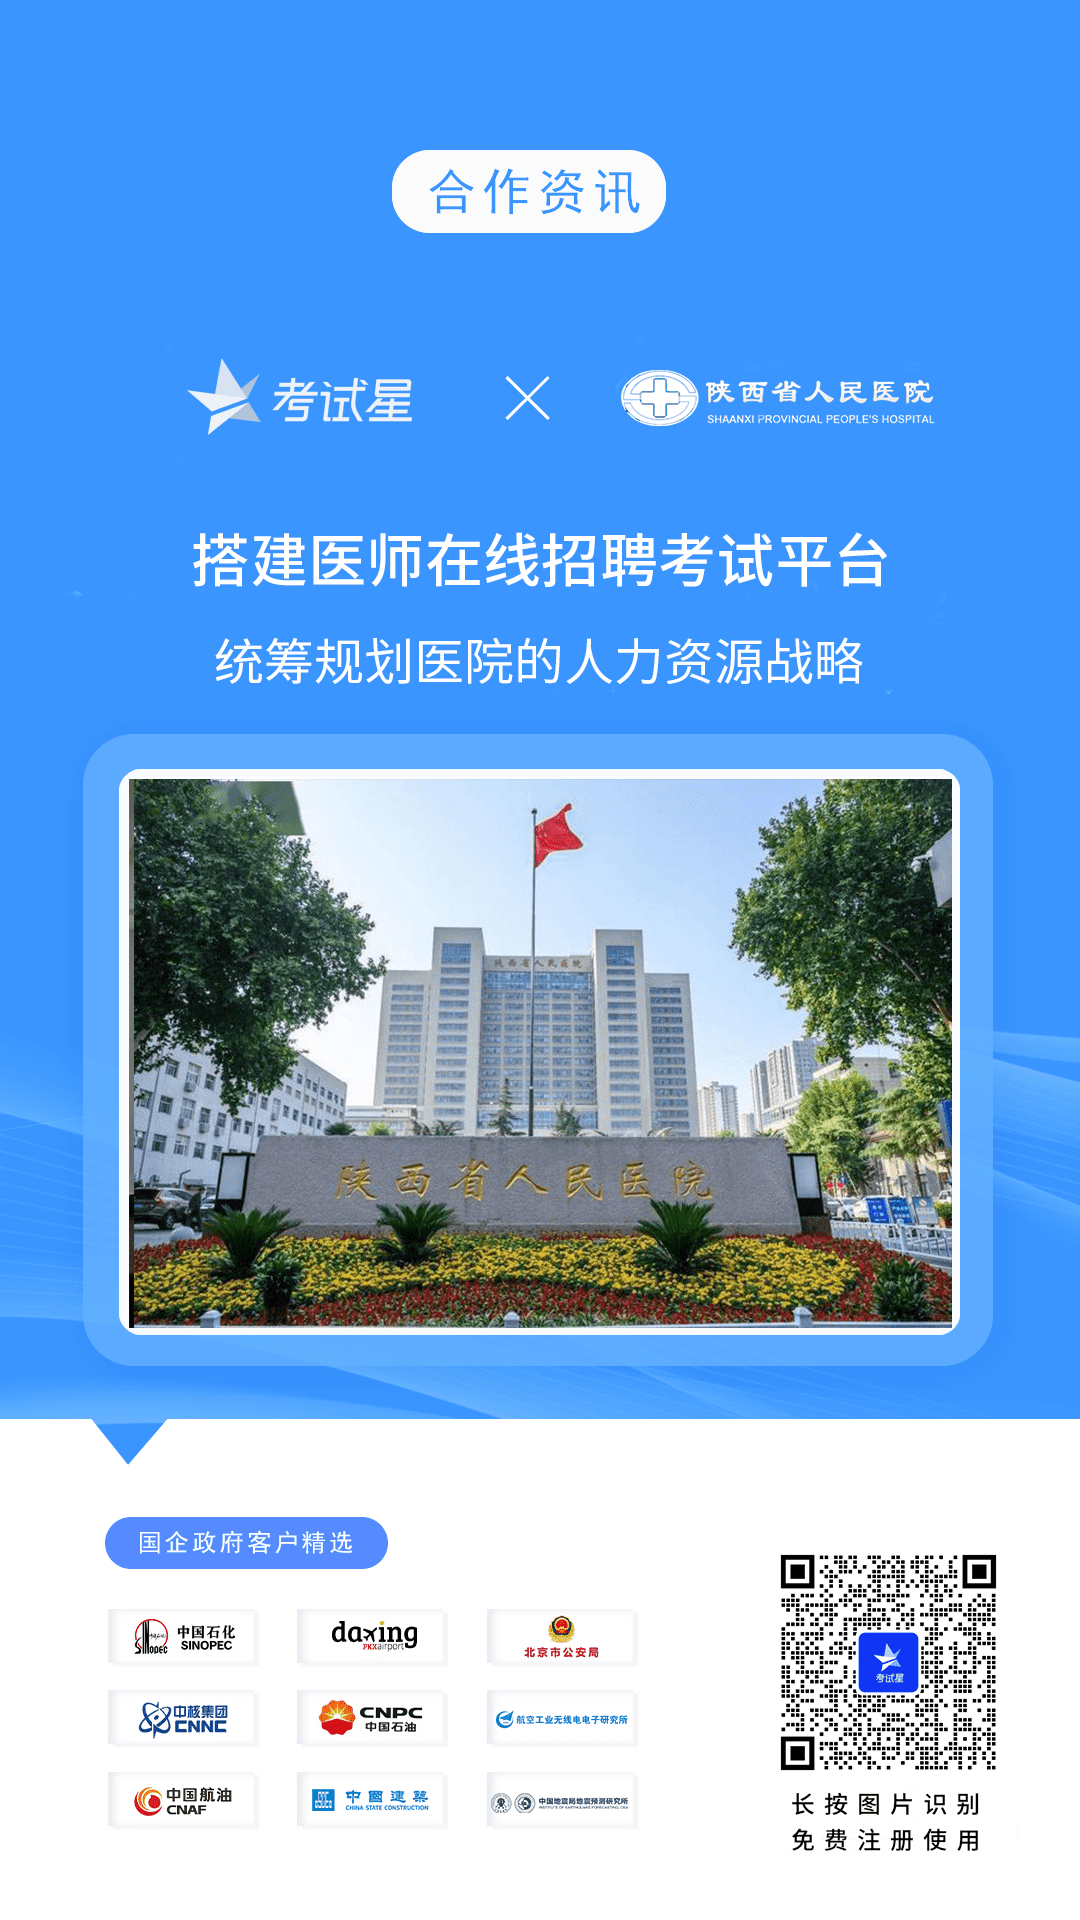 陕西省人民医院-考试星在线招聘考试平台